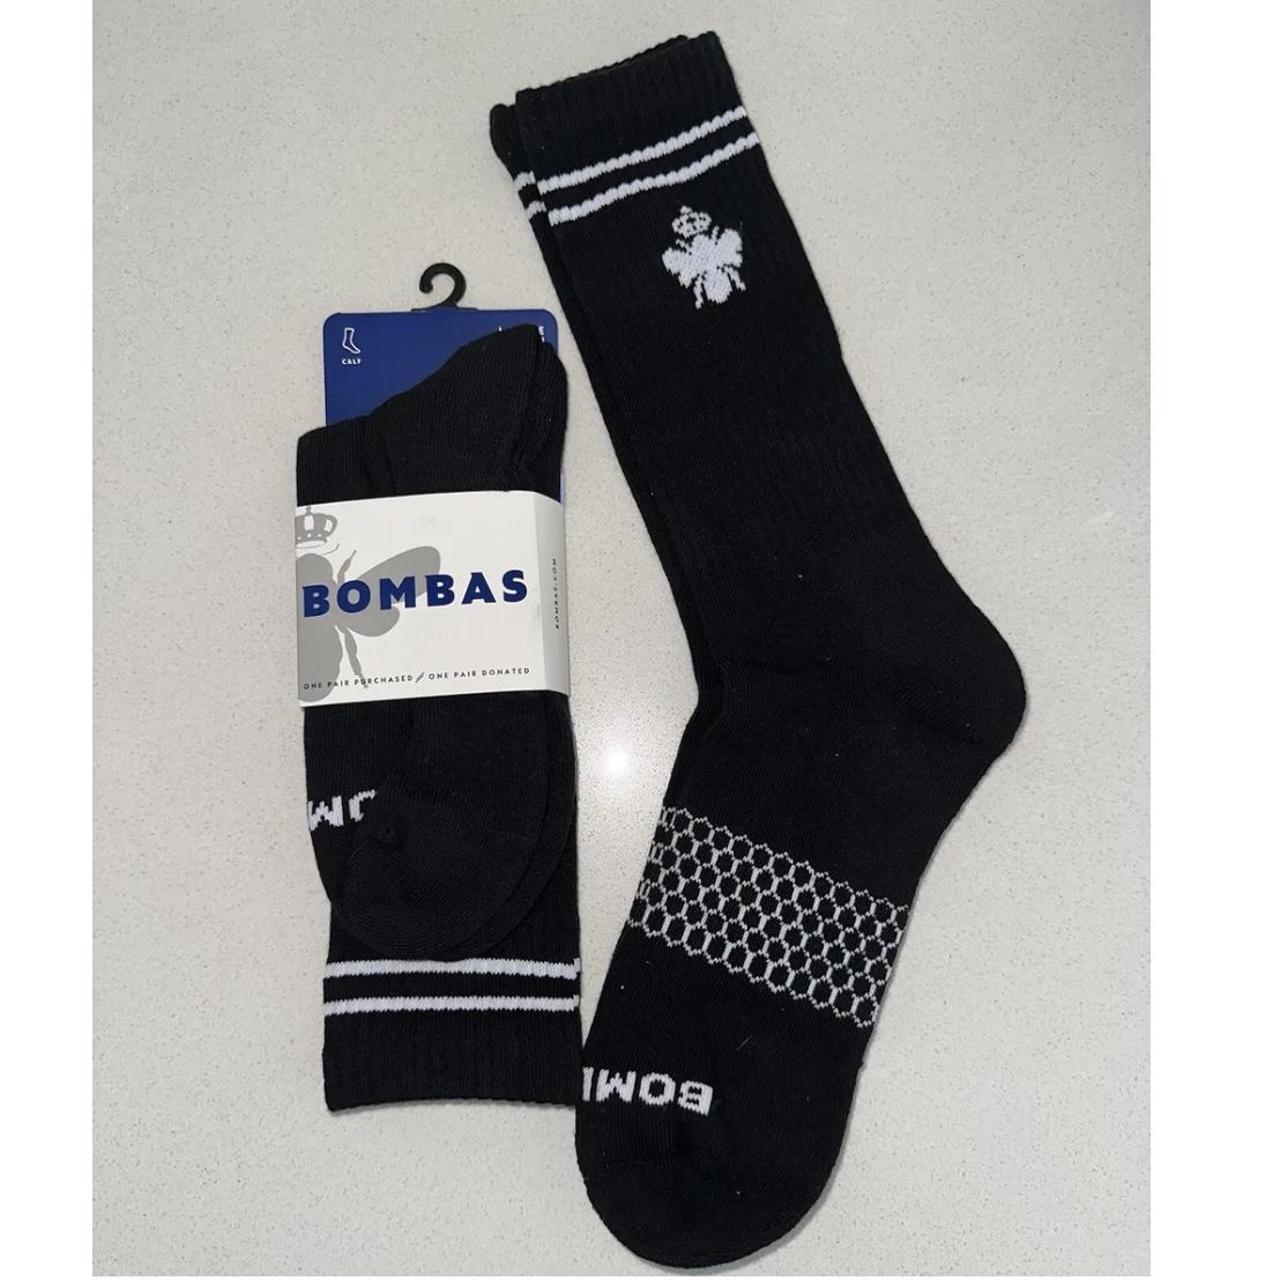 Bombas Men's Black and White Socks (2)